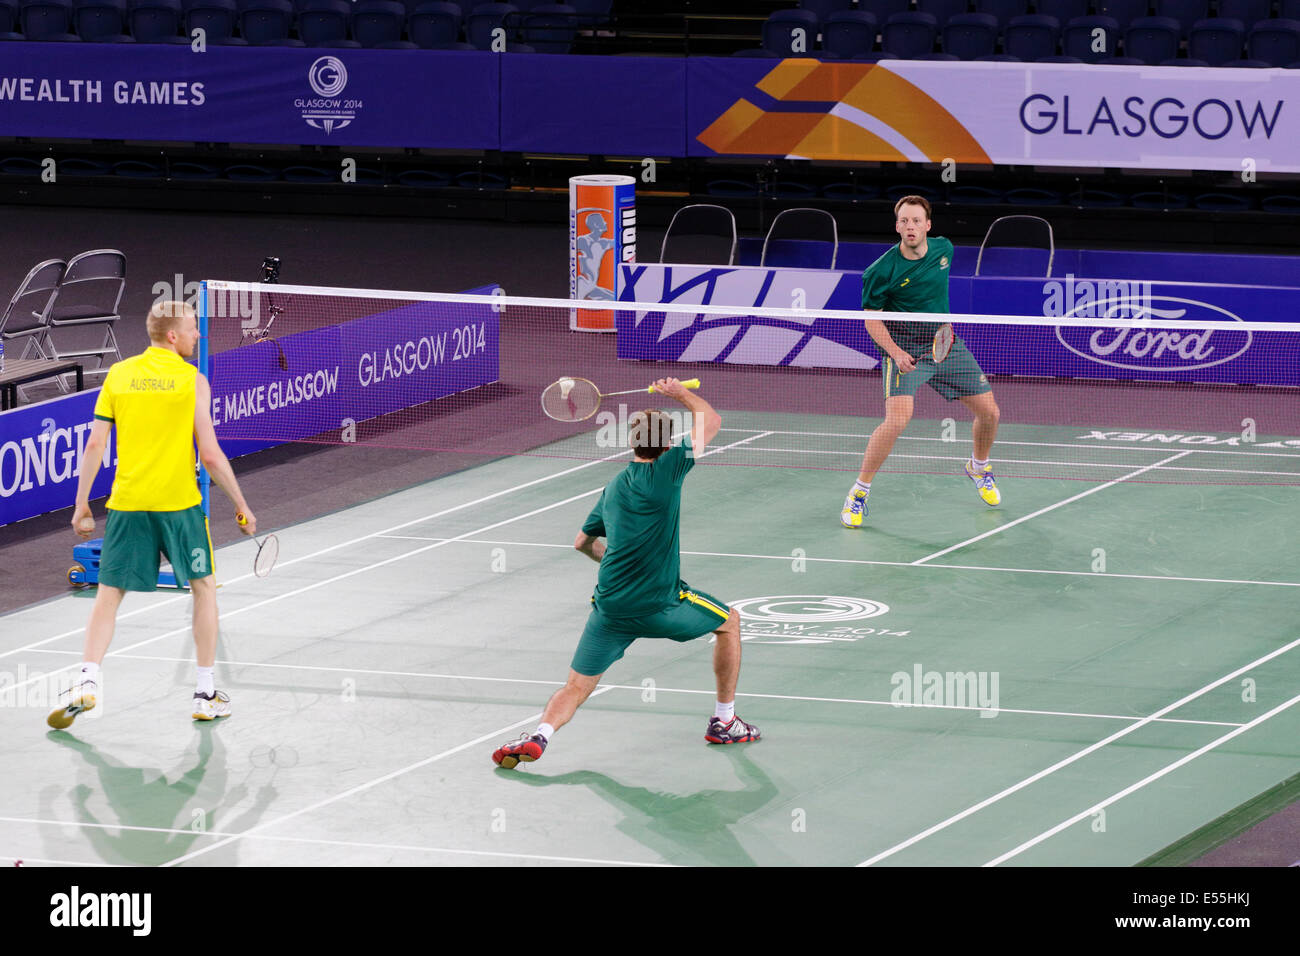 Emirates Arena, Glasgow, Scozia, Regno Unito, lunedì, 21 luglio 2014. Team Australia si allenerà presso la sede dei Glasgow 2014 Commonwealth Games Badminton Competitions Foto Stock